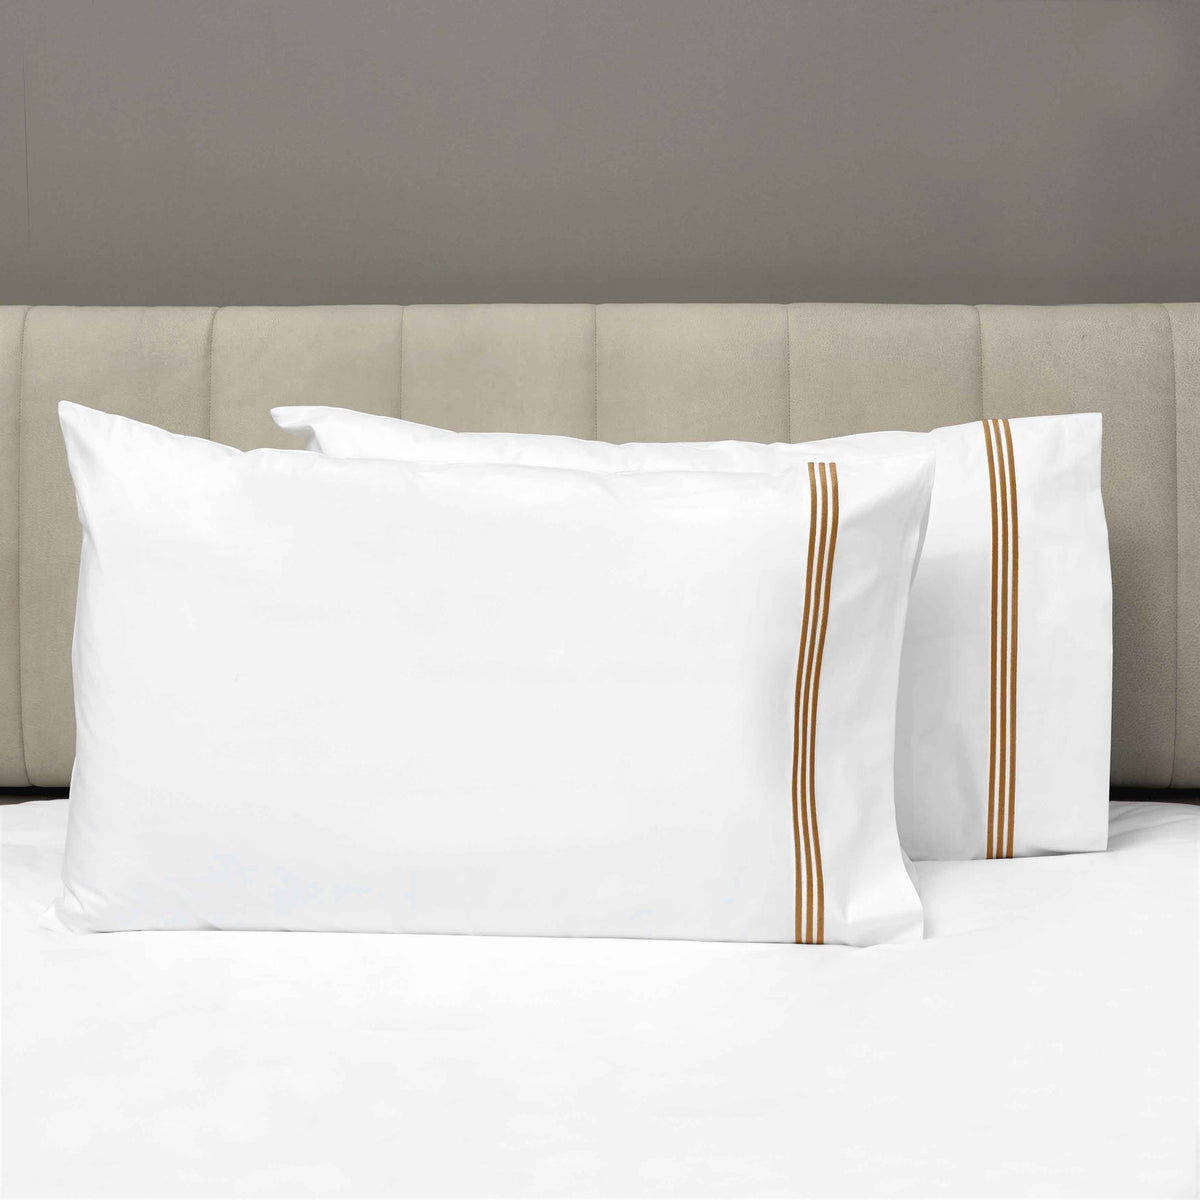 Pair of Pillowcases of Signoria Platinum Percale Bedding in White/Cognac Color